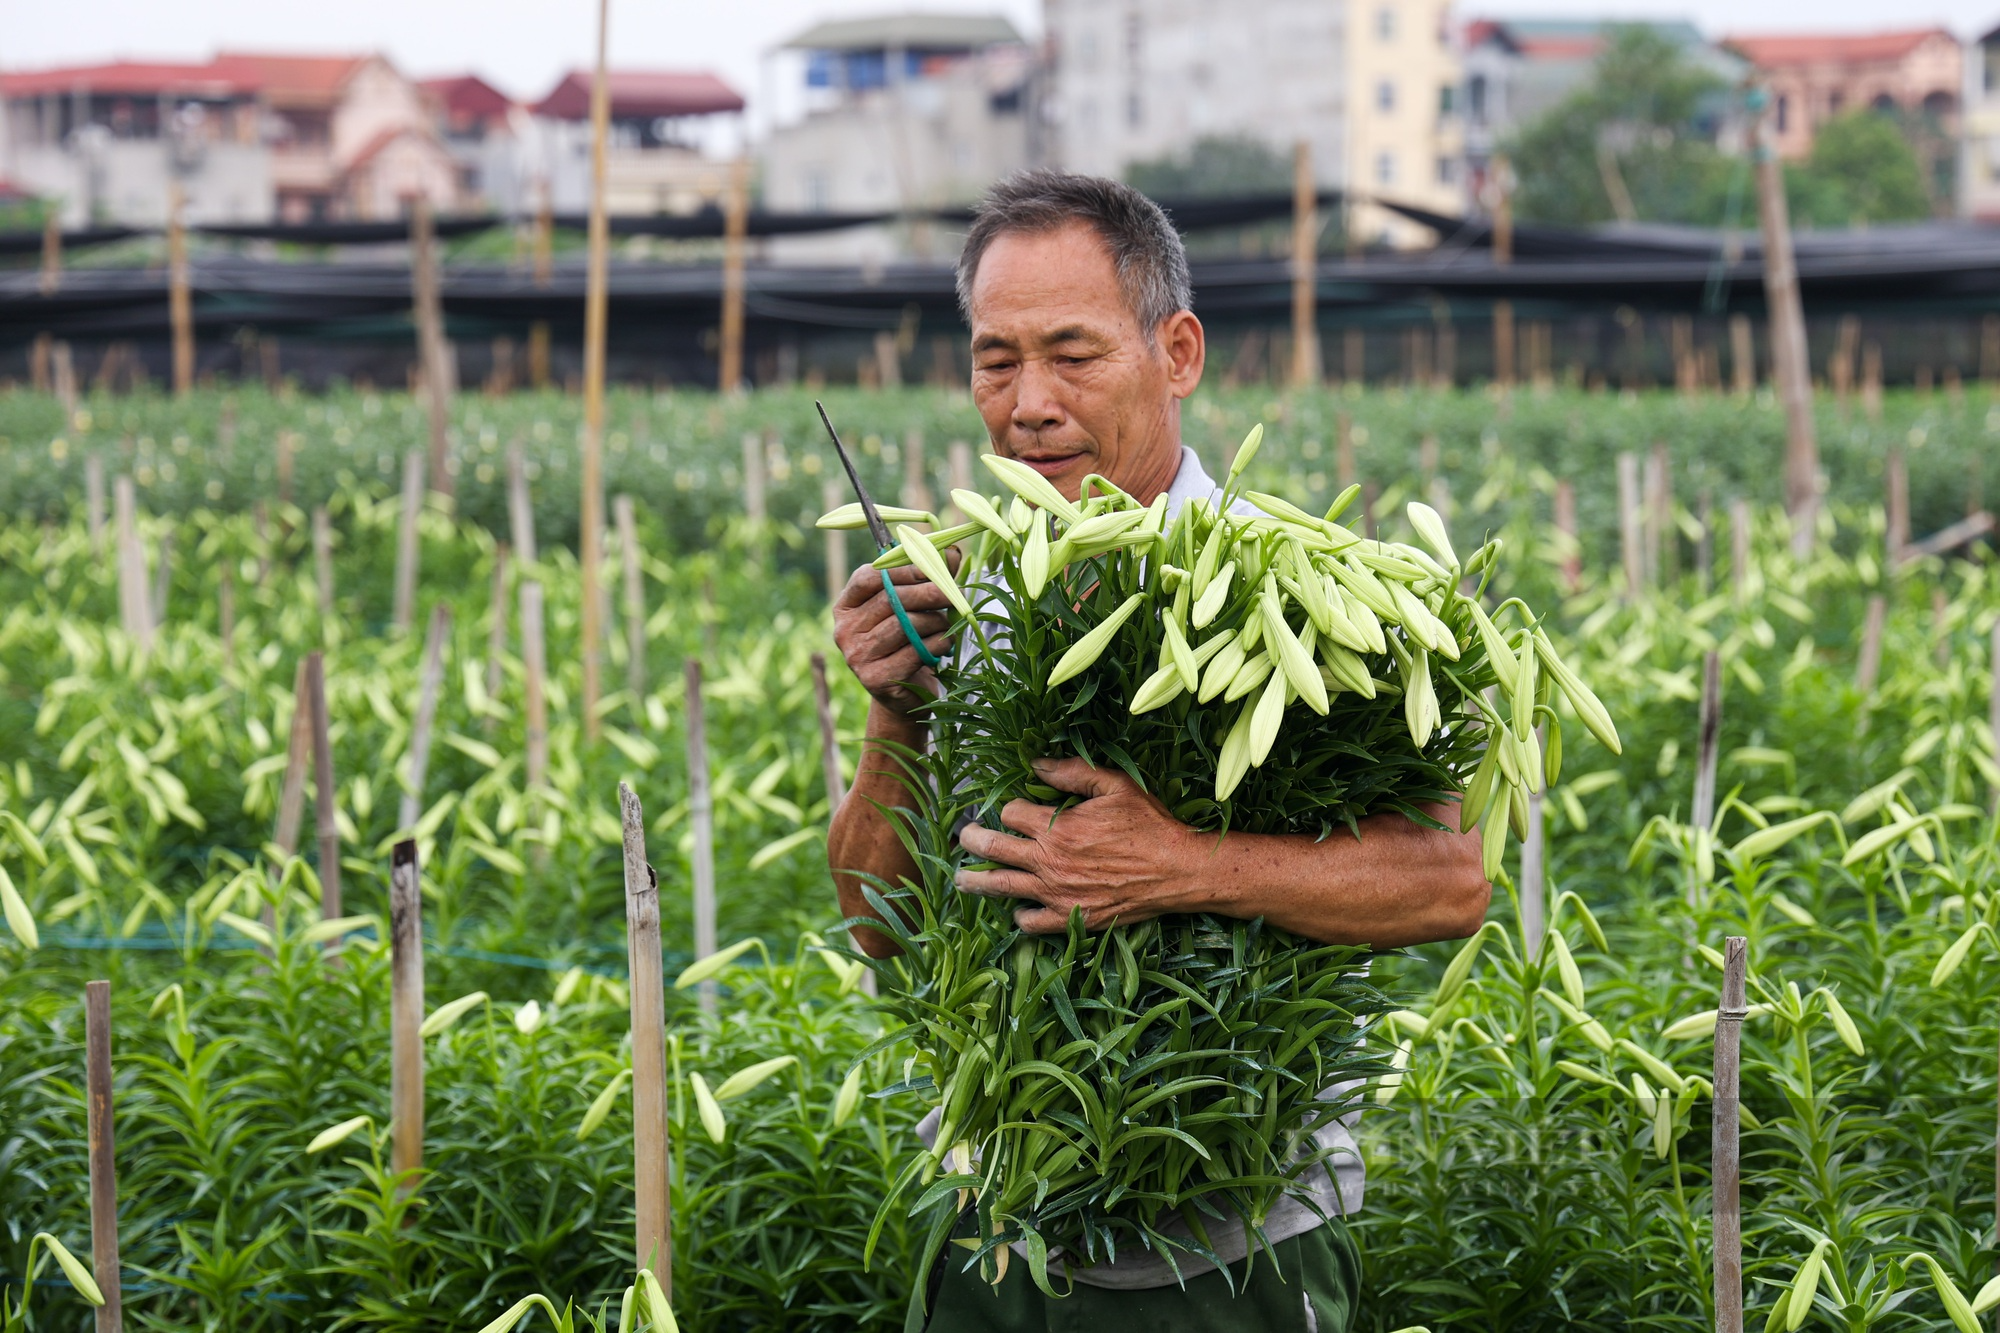 Hoa loa kèn bung nở, nông dân Hà Nội thu hàng chục triệu mỗi ngày - Ảnh 4.